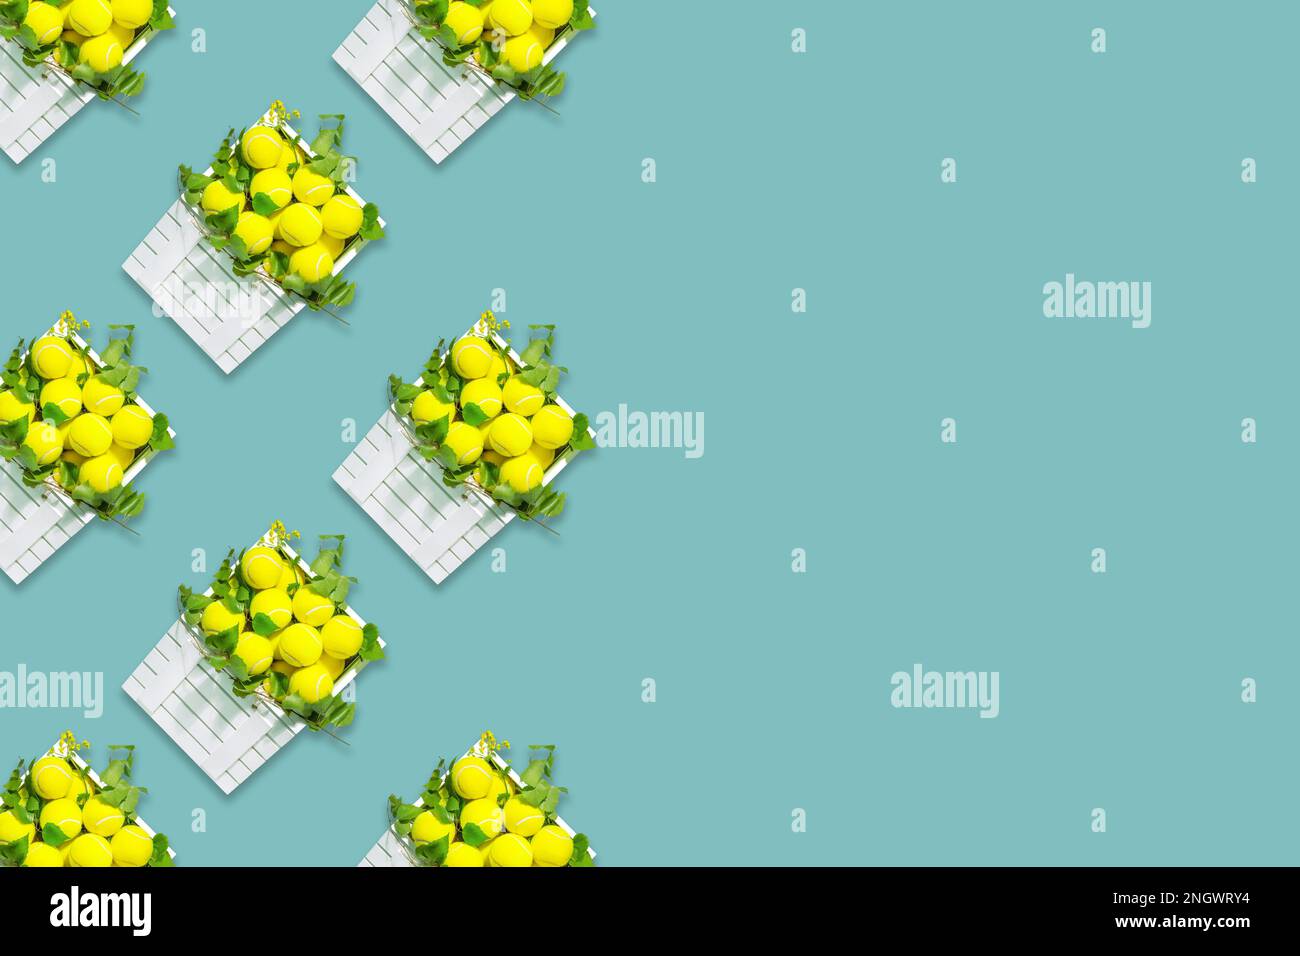 Tennis sfondo. Composizione sportiva con palle da tennis gialle in scatole bianche di legno con rami verdi su sfondo blu con spazio copia. Estate Foto Stock